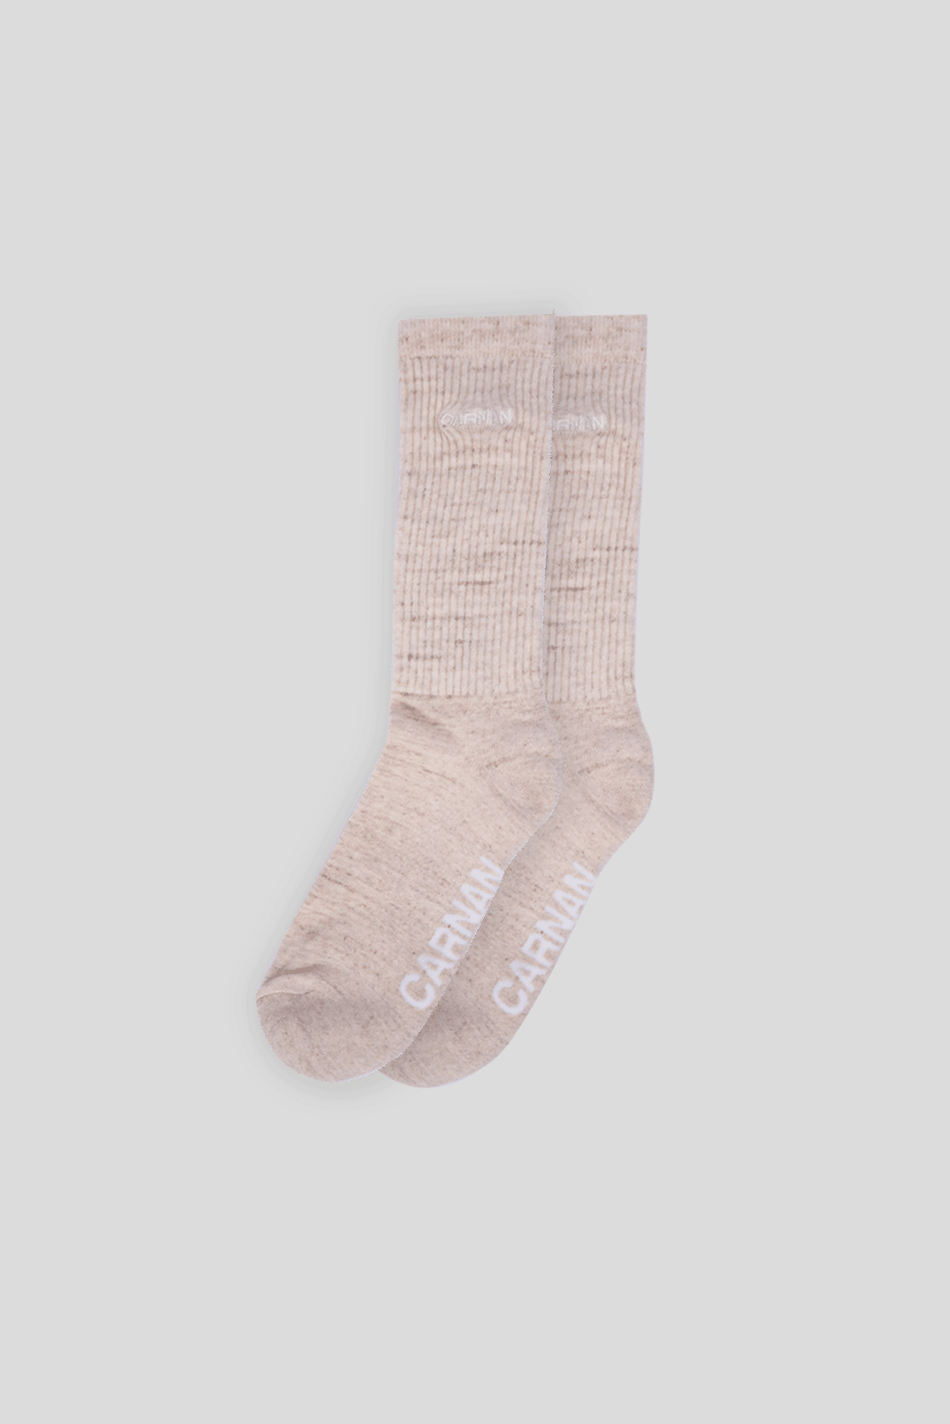 Sand Blended Yarn Socks